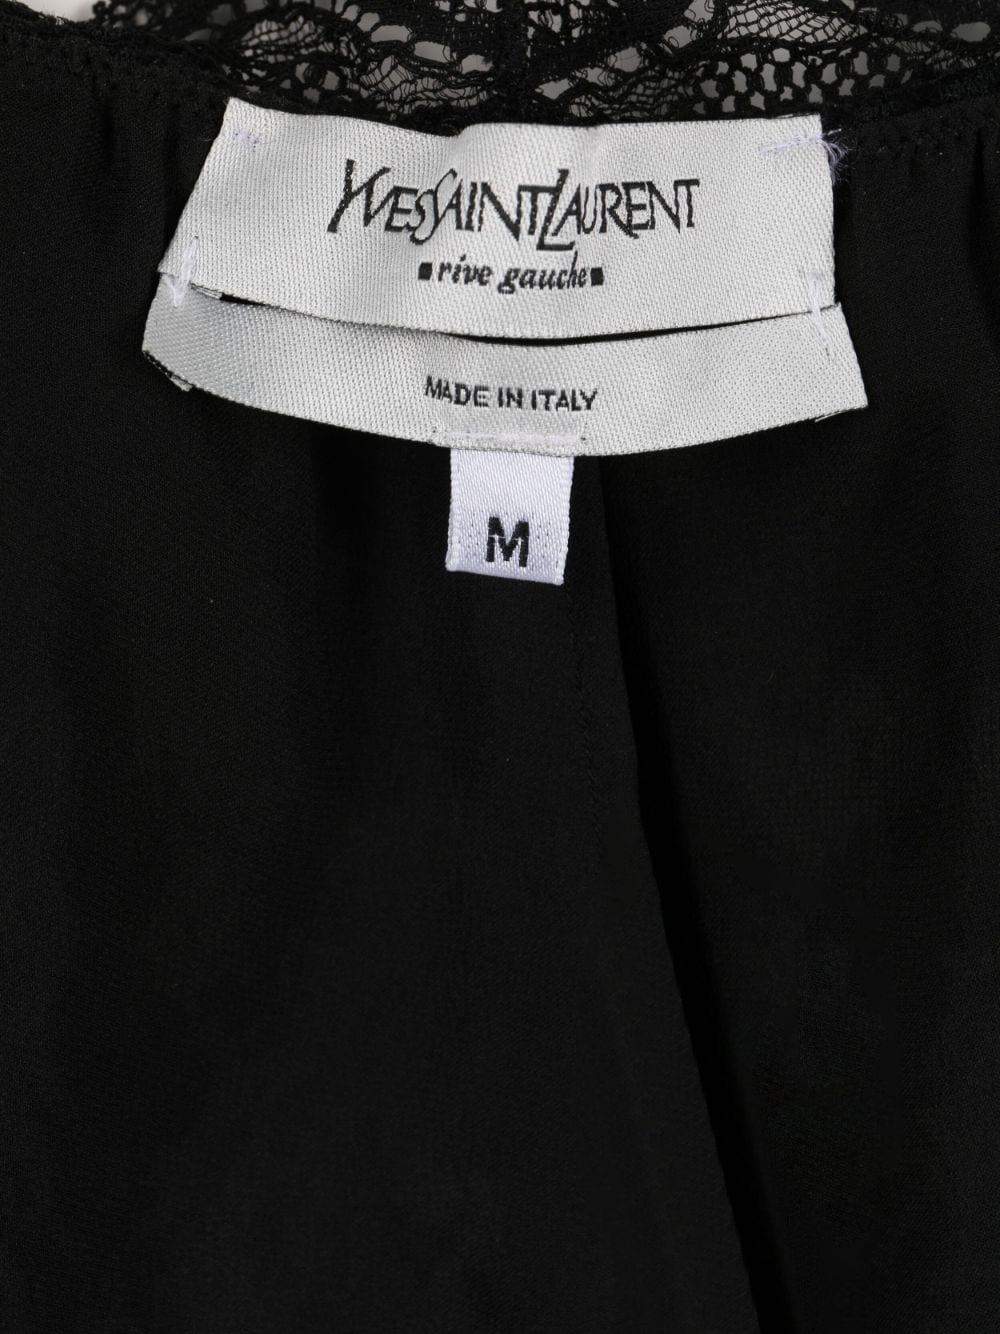 Yves Saint Laurent Evening Black Silk Lace Top For Sale 2